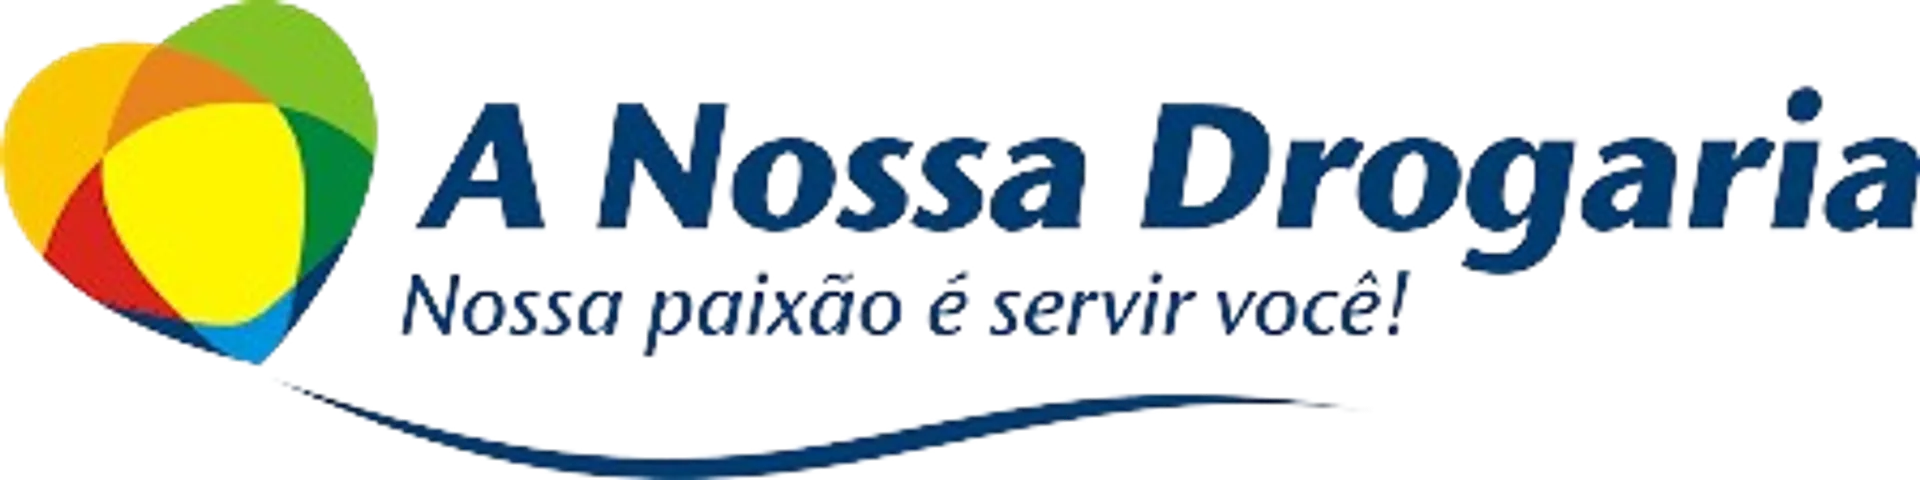 A NOSSA DROGARIA logo